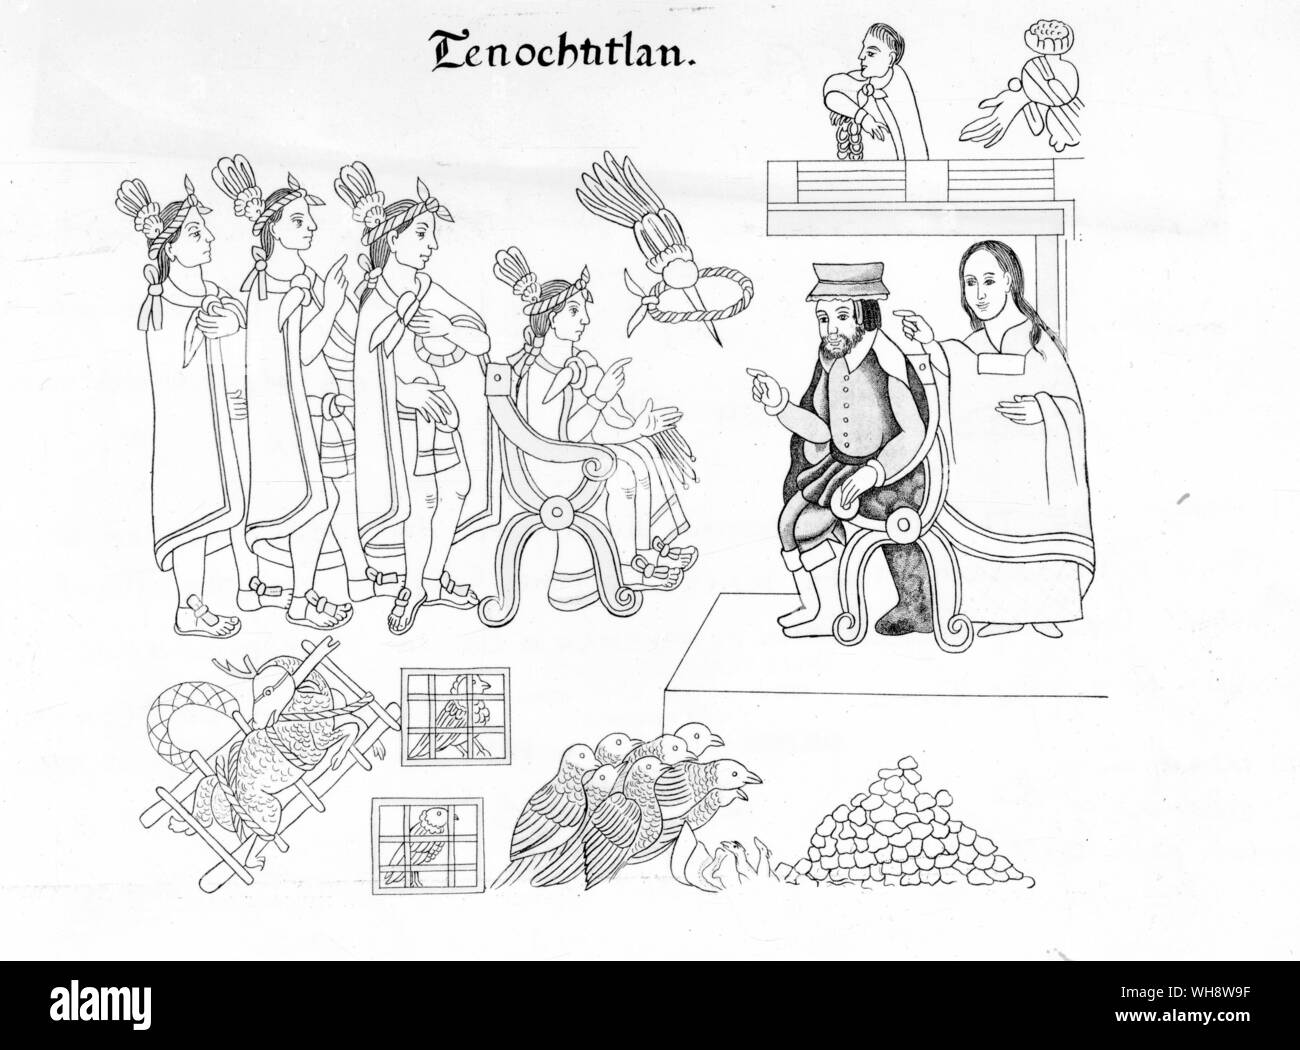 Die Sitzung des Moctezuma und Cortes, in einem Mexikanischen Codex vertreten, Lienza de Tlaxcala. Mexikanische illustrierte Dokument zwischen 1550 und 1564 durch Tlaxcalan Künstler, die für die Eroberung von der Tlaxcalan Sicht zusammengestellt. Stockfoto